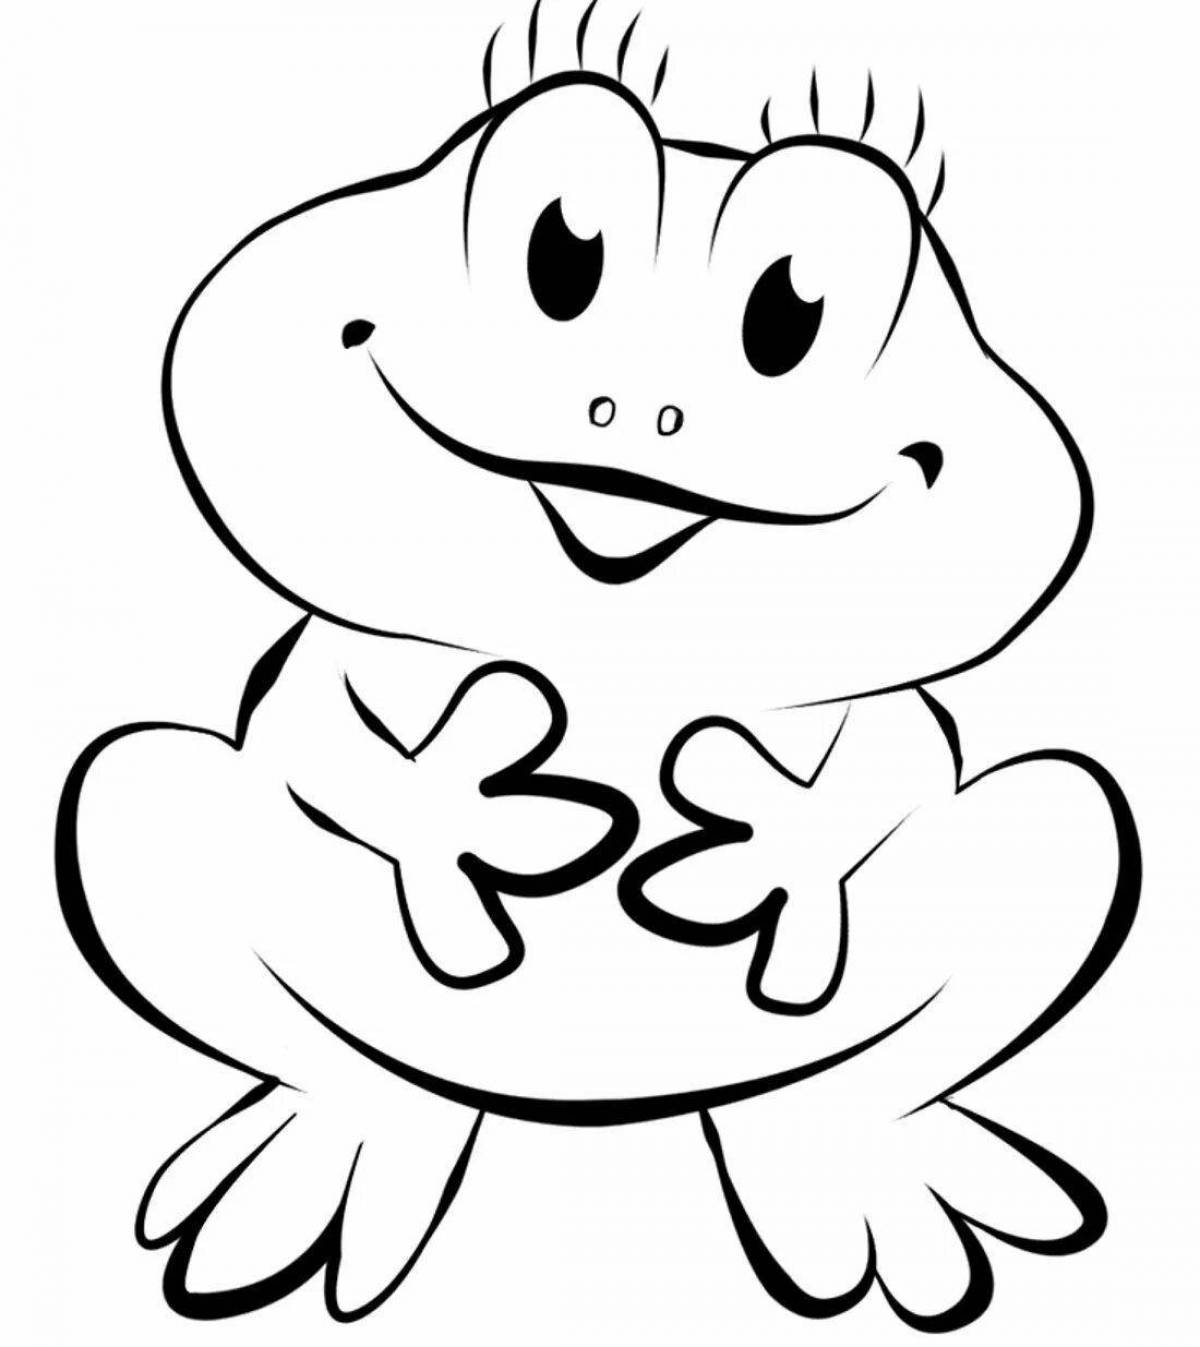 Динамический рисунок лягушки для детей